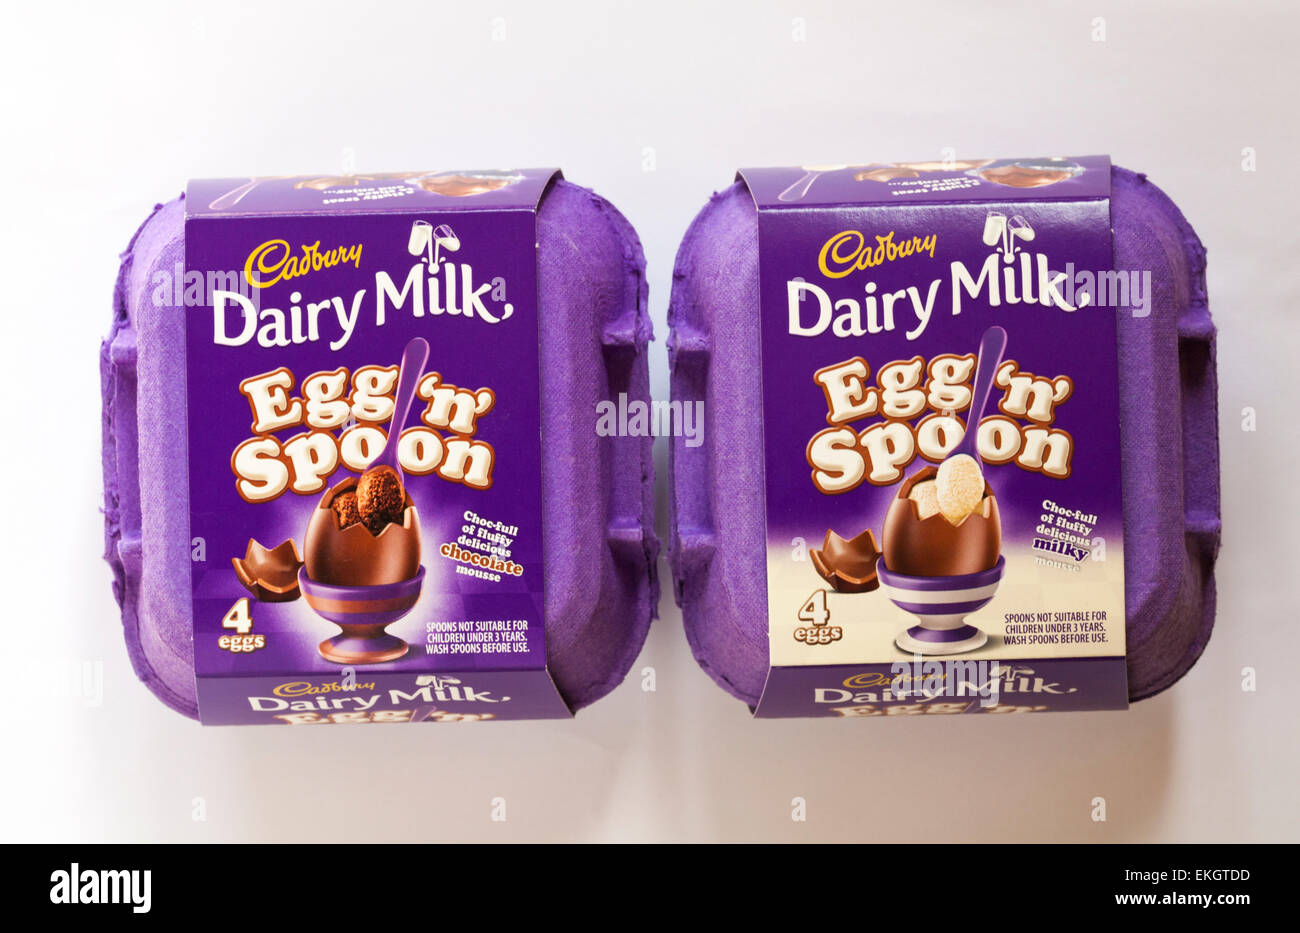 Cartoni di Cadbury Dairy Milk uovo 'n' Spoon - choc-pieno di soffici deliziosa mousse al latte e mousse al cioccolato - Pronto per la Pasqua Foto Stock